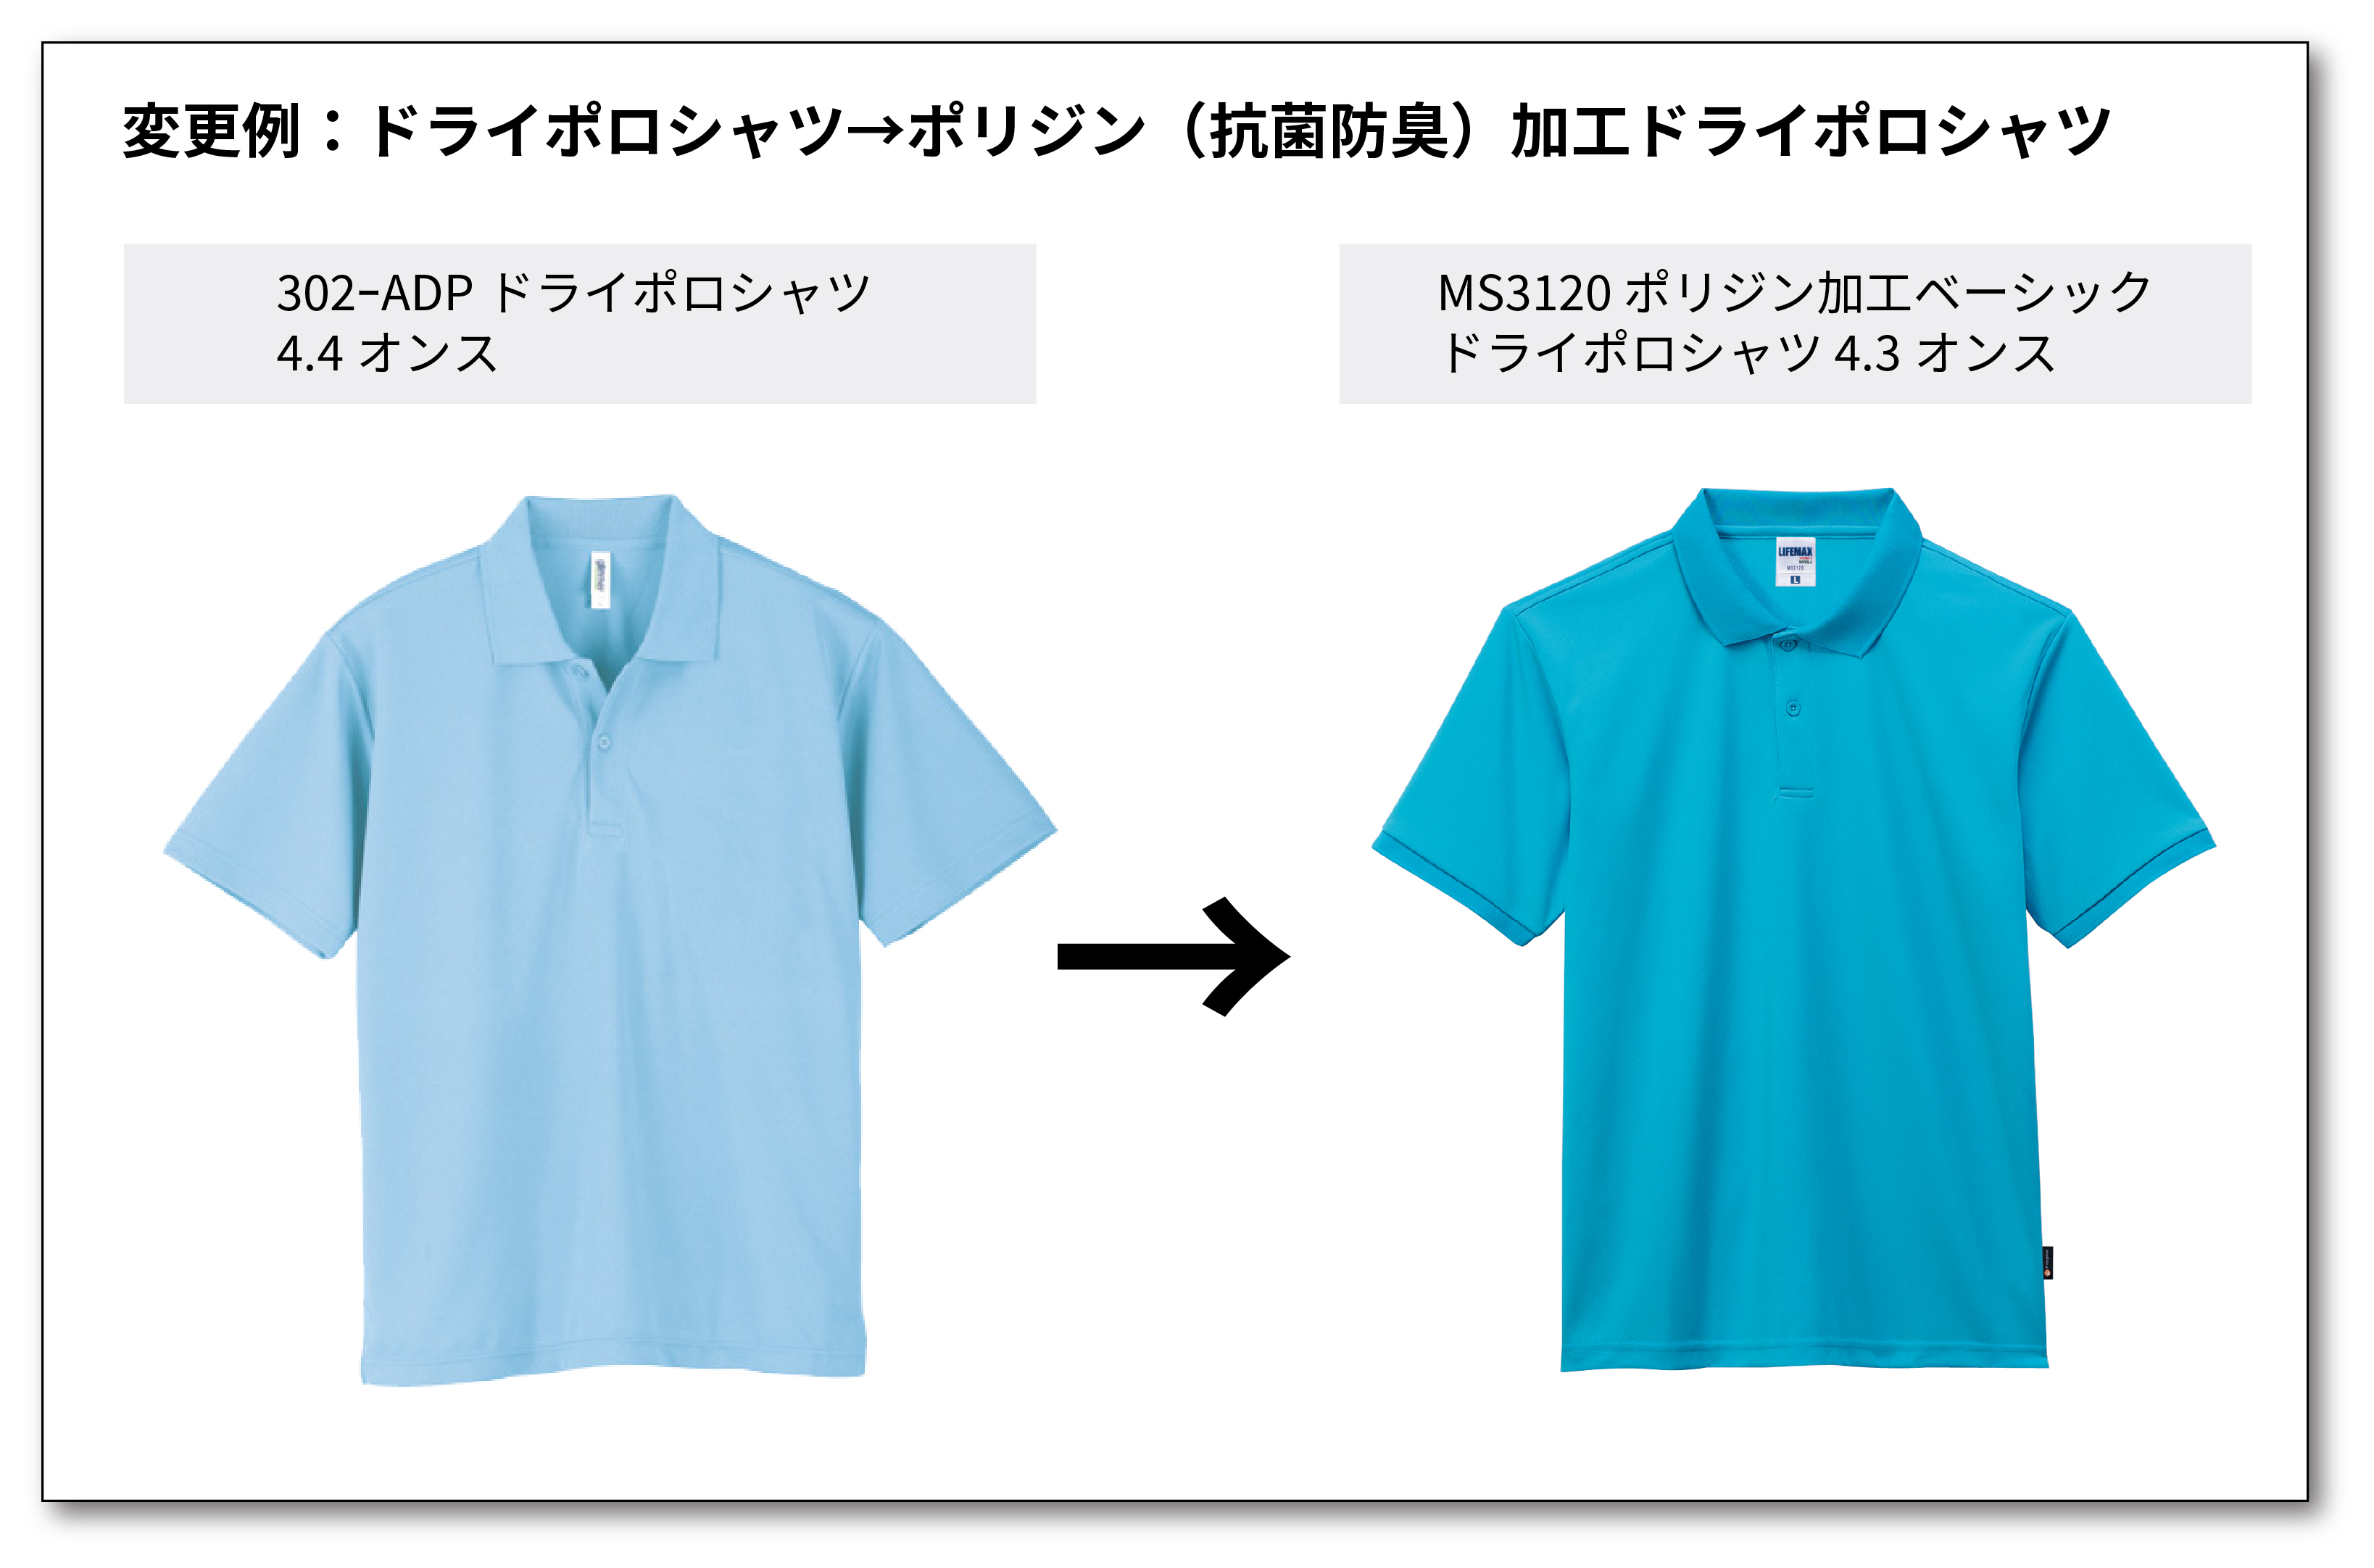 Tシャツ商品乗り換えキャンペーン参考例４